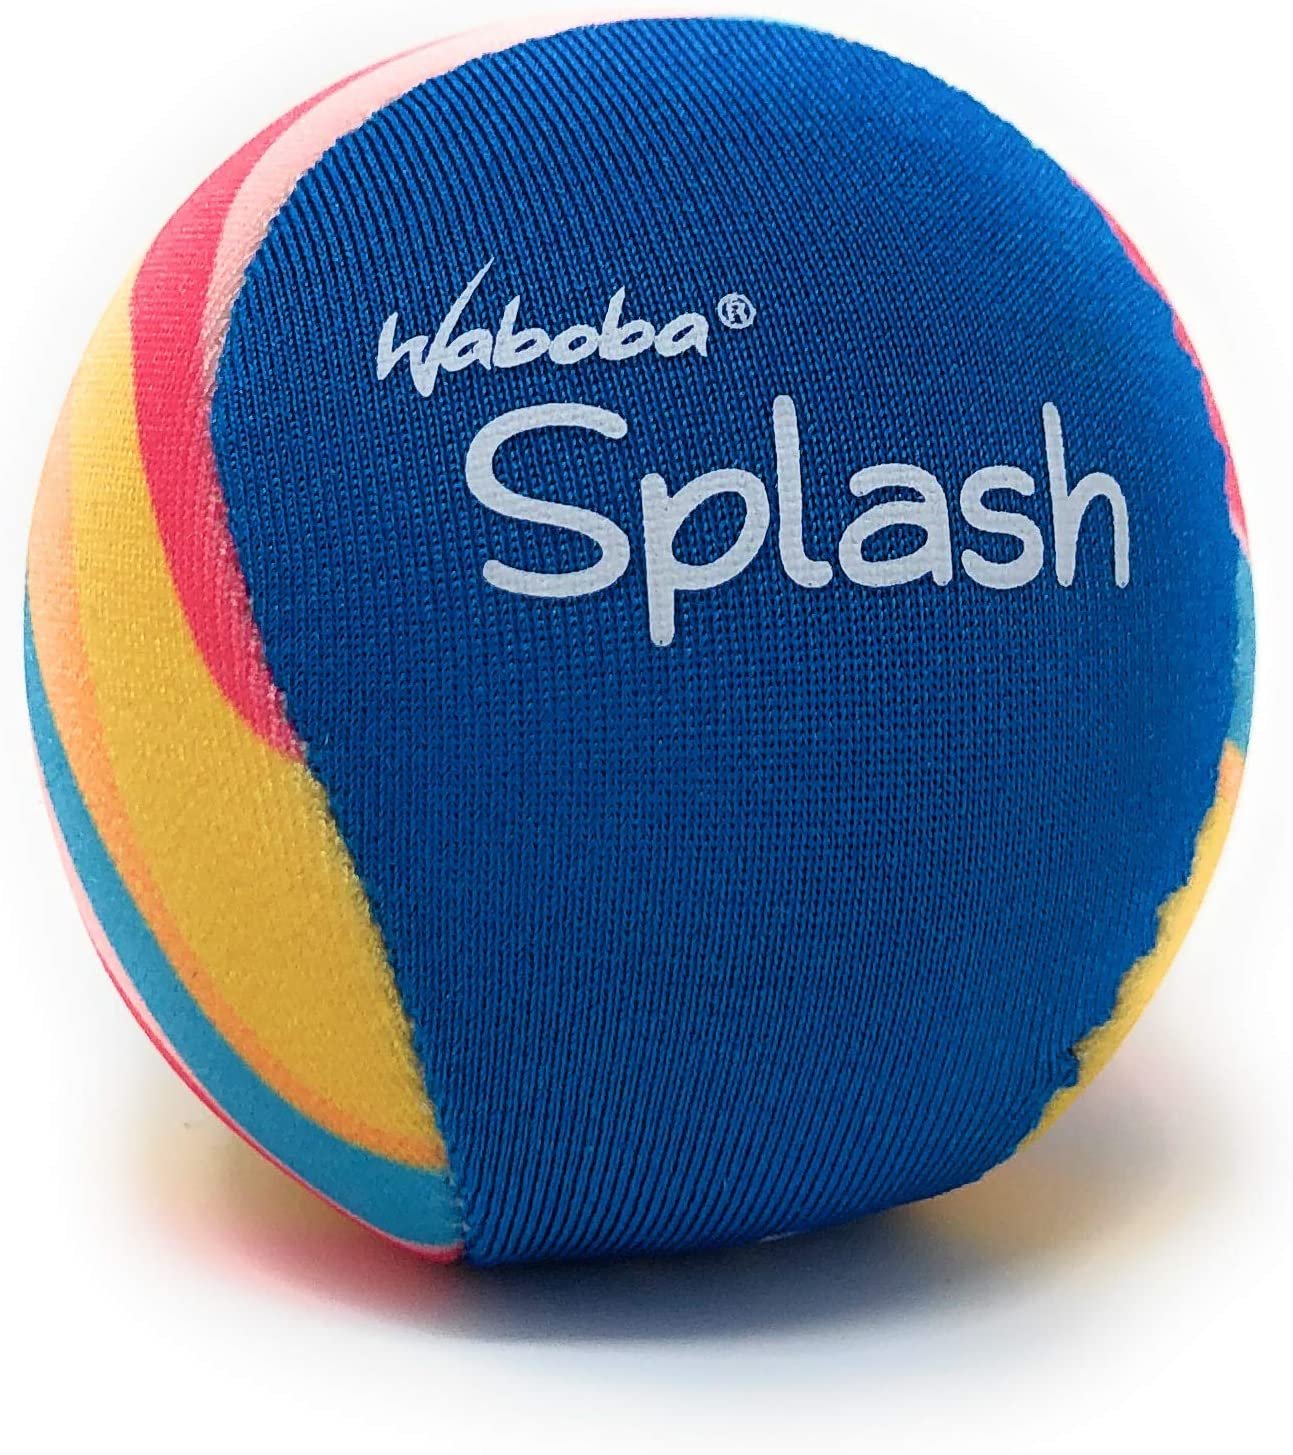 Waboba Splash Water Bouncing Ball (Colors May Vary) (Single)